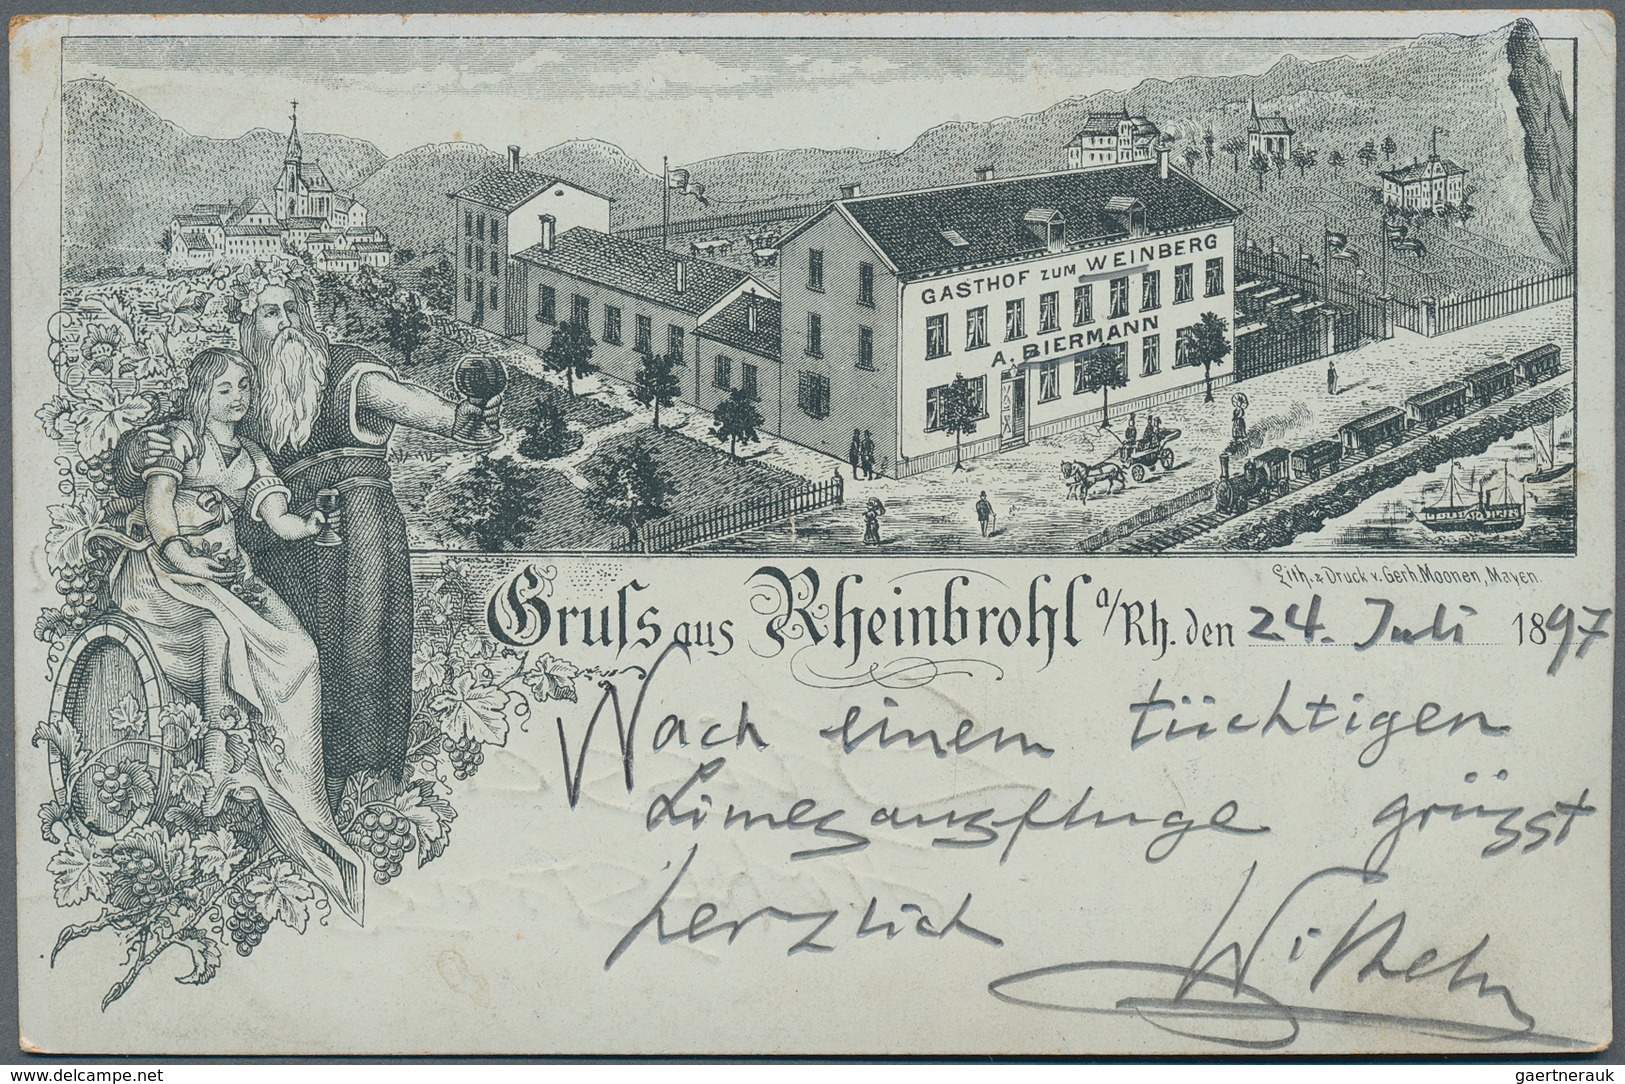 Ansichtskarten: Deutschland: 1898/1930 ca., Partie von ca. 120 zumeist gelaufenen Ansichtskarten que